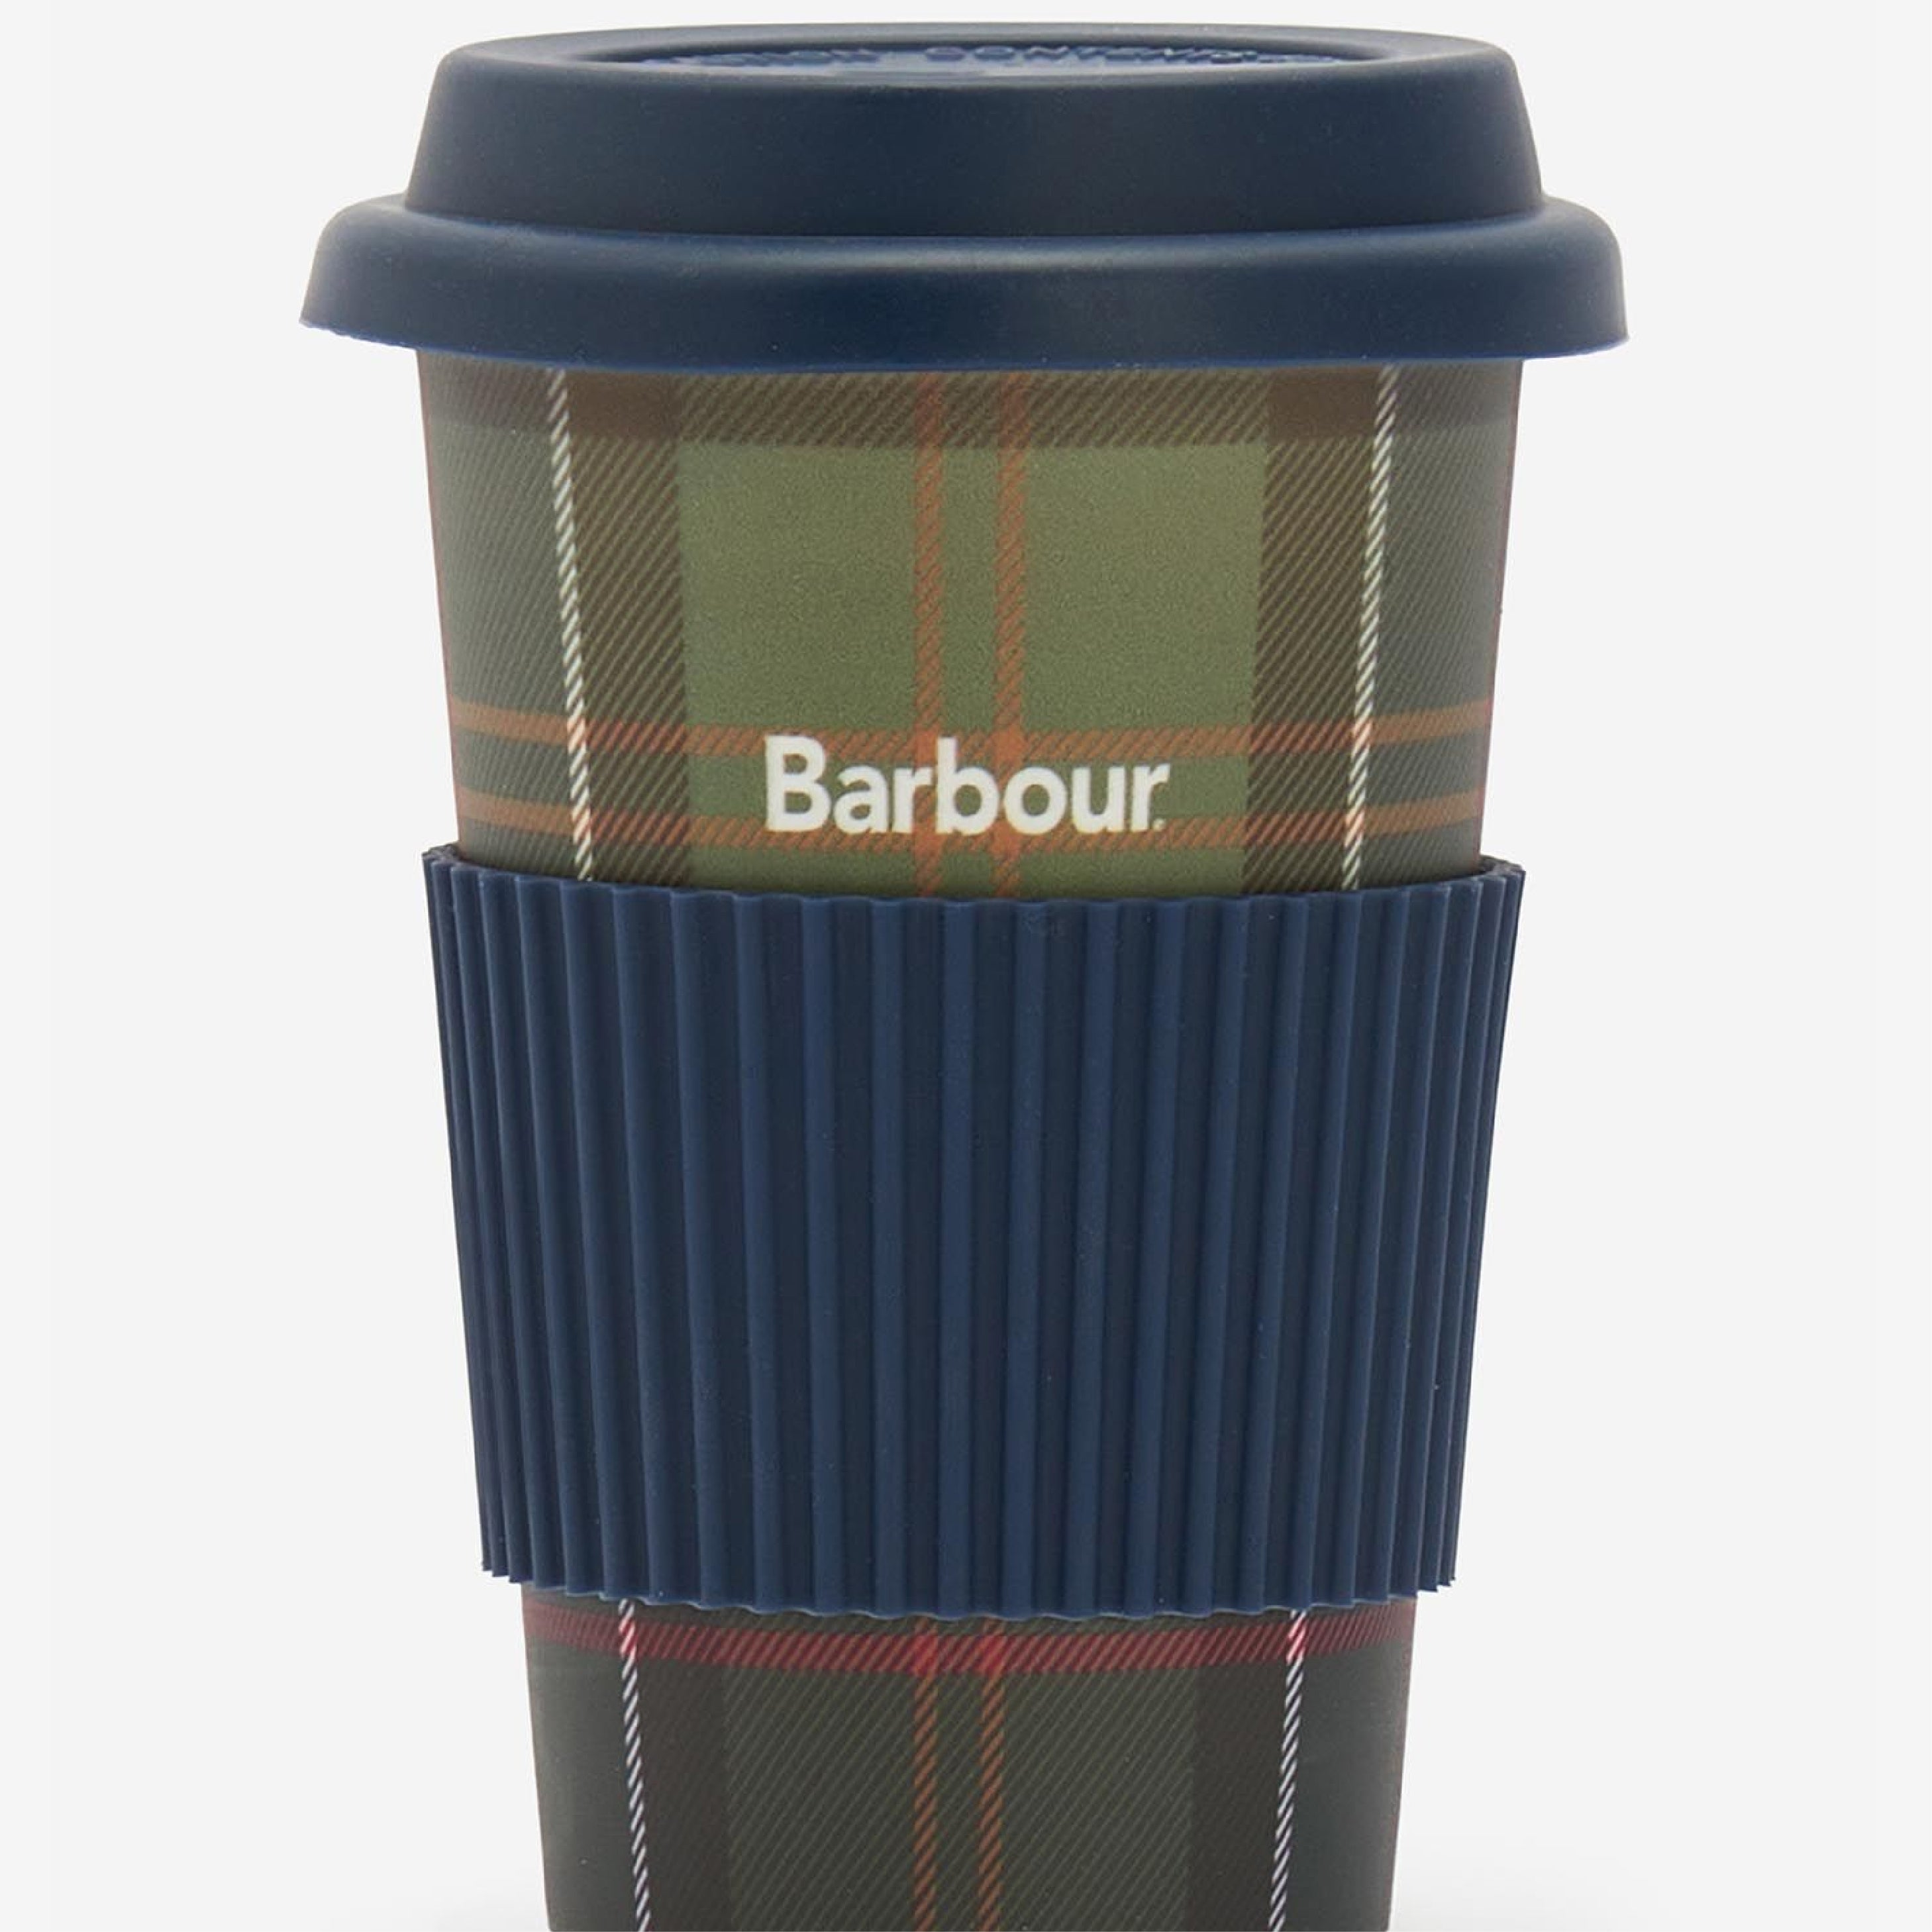 Barbour Reuse Trv Mug